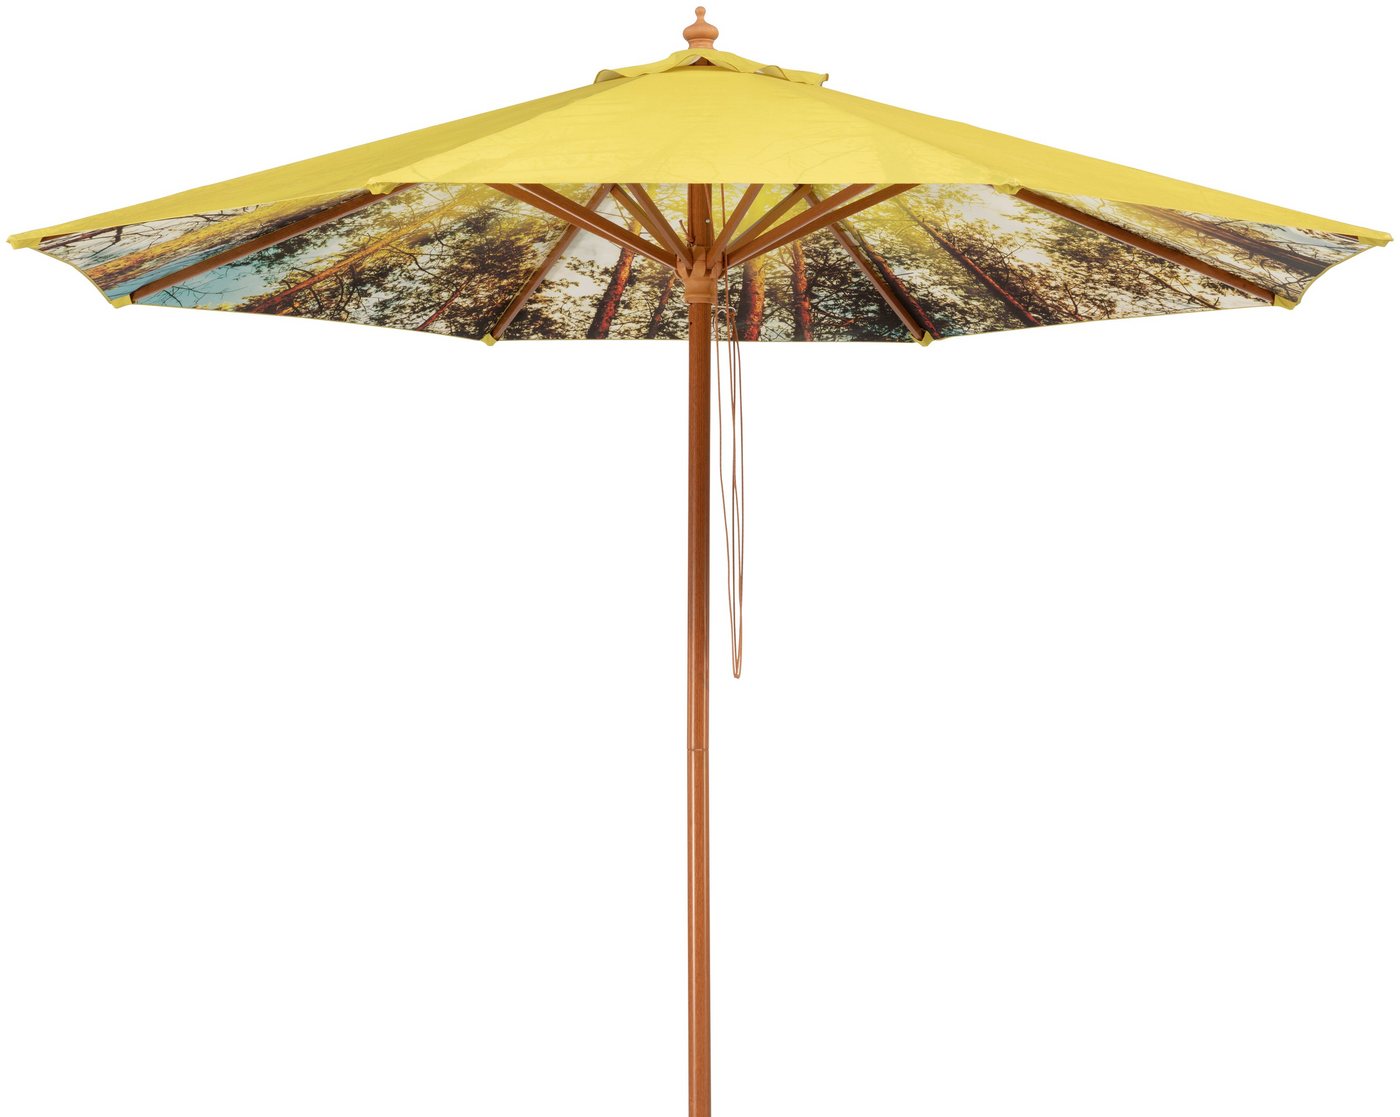 Schneider Schirme Marktschirm Malaga Forest, Durchmesser 300 cm, Innen mit Waldmotiv, rund, ohne Schirmständer von Schneider Schirme